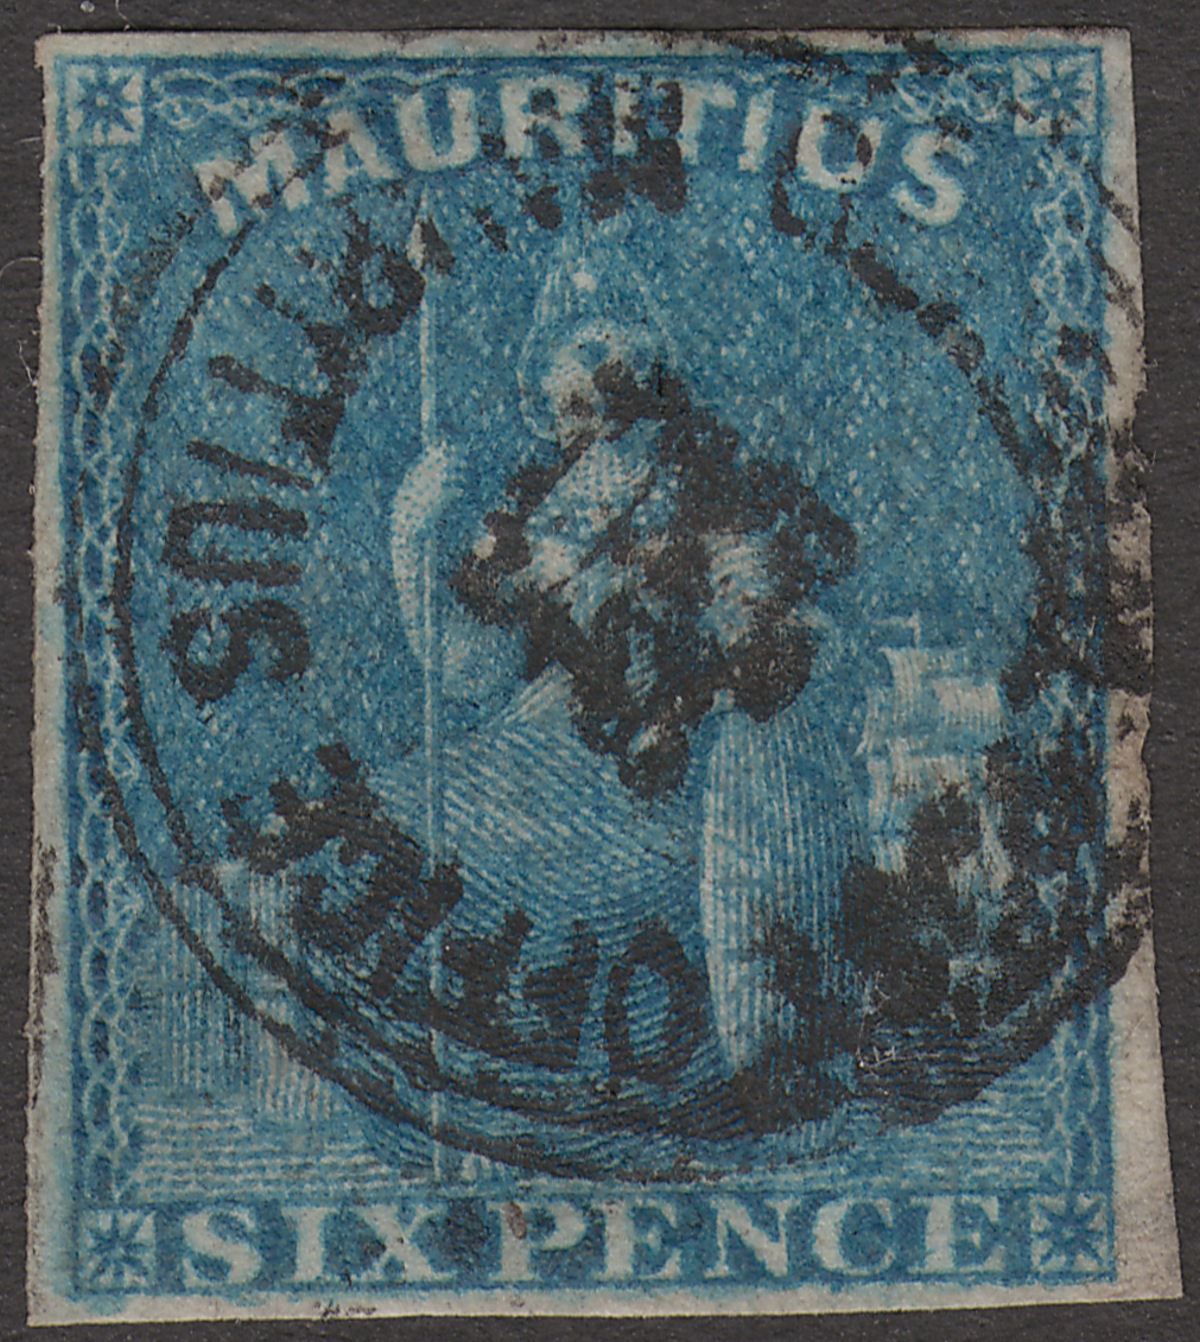 Mauritius 1859 QV Britannia 6d Blue Imperf Used SG32 cat £55 with Four Margins